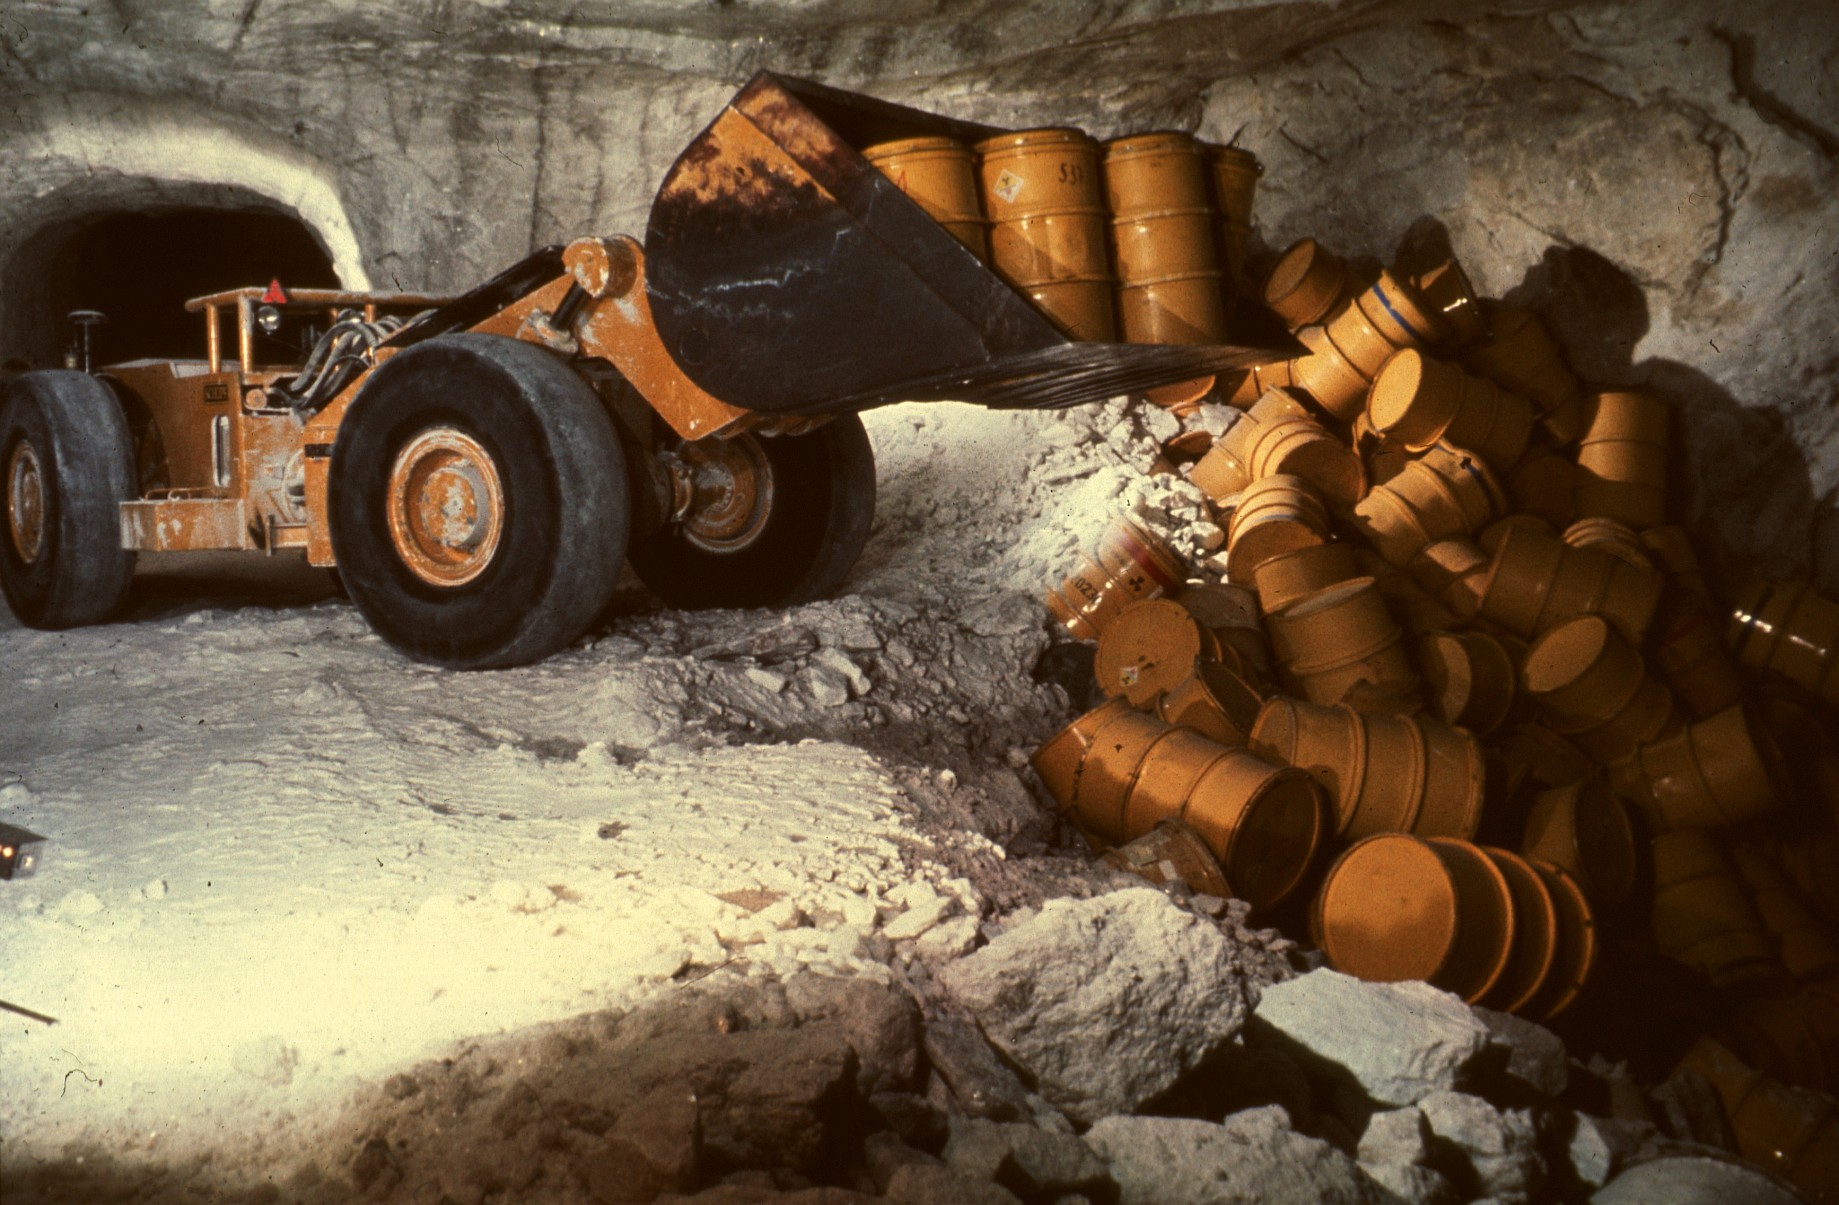 Ein Radlader steht in einem Bergwerksstollen und kippt gelbe Fässer auf den Boden